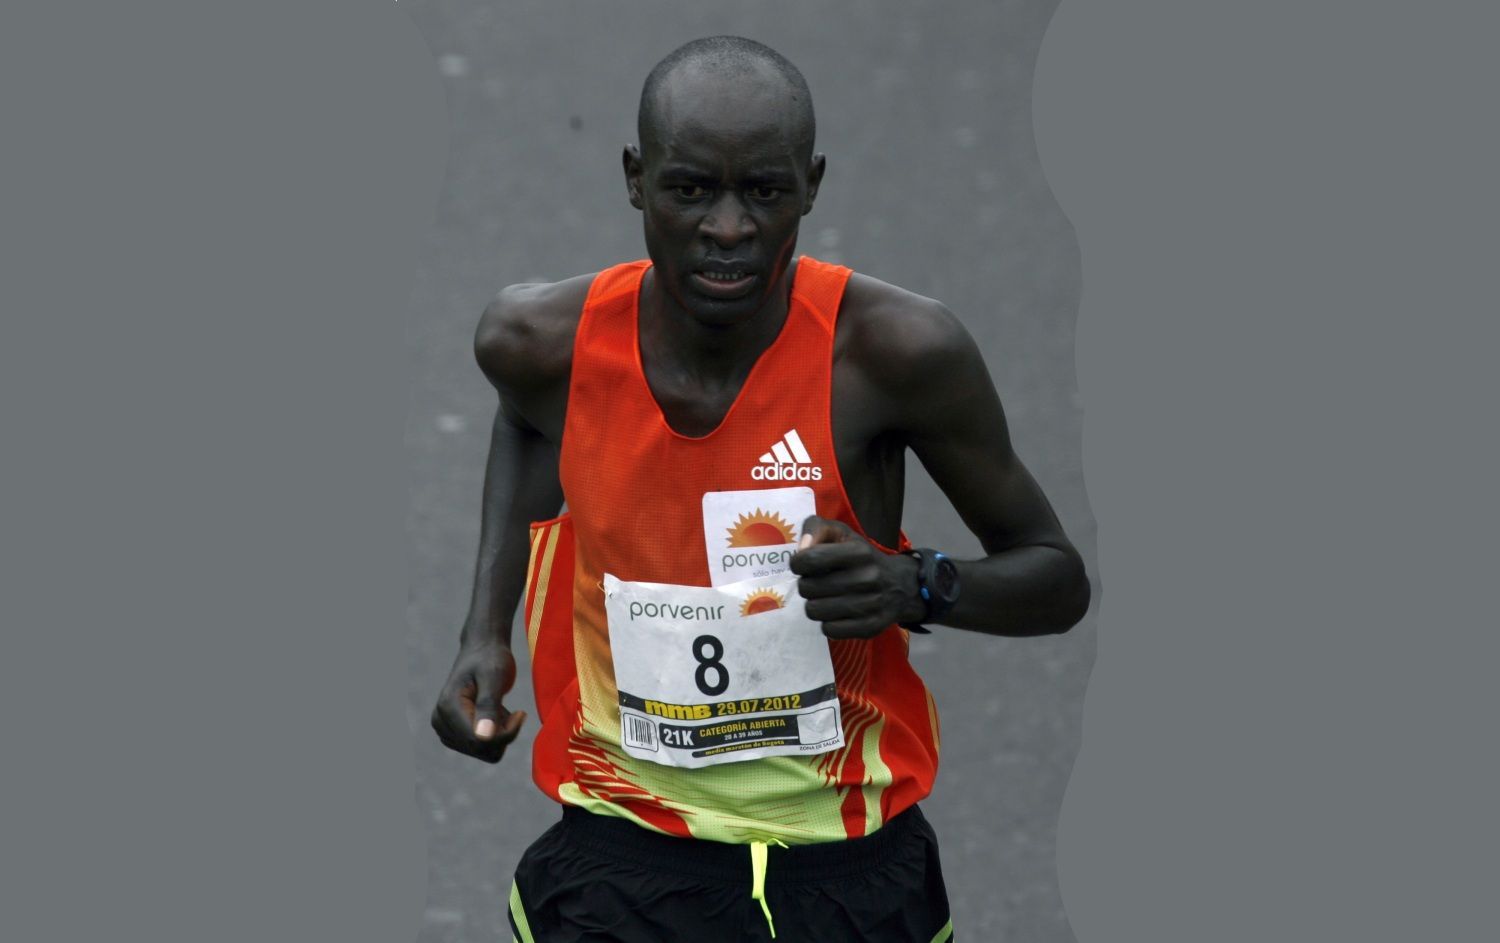 Keňský maratonec Peter Kirui dobíhá jako první půlmaraton v Bogotě.